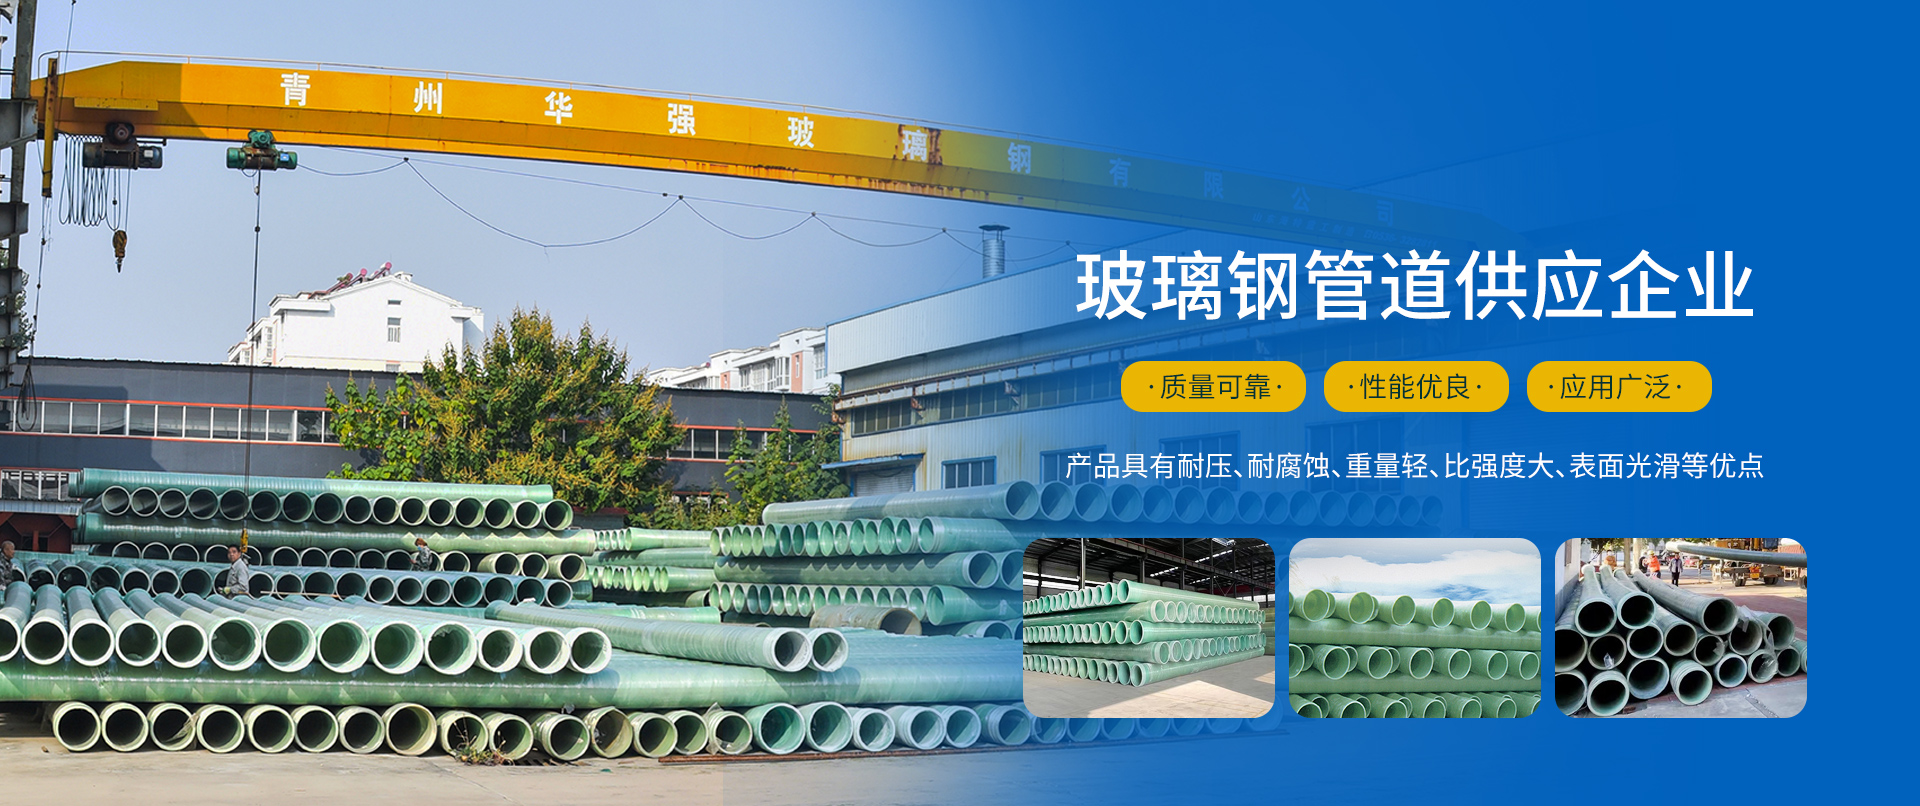 青州华强玻璃钢有限公司